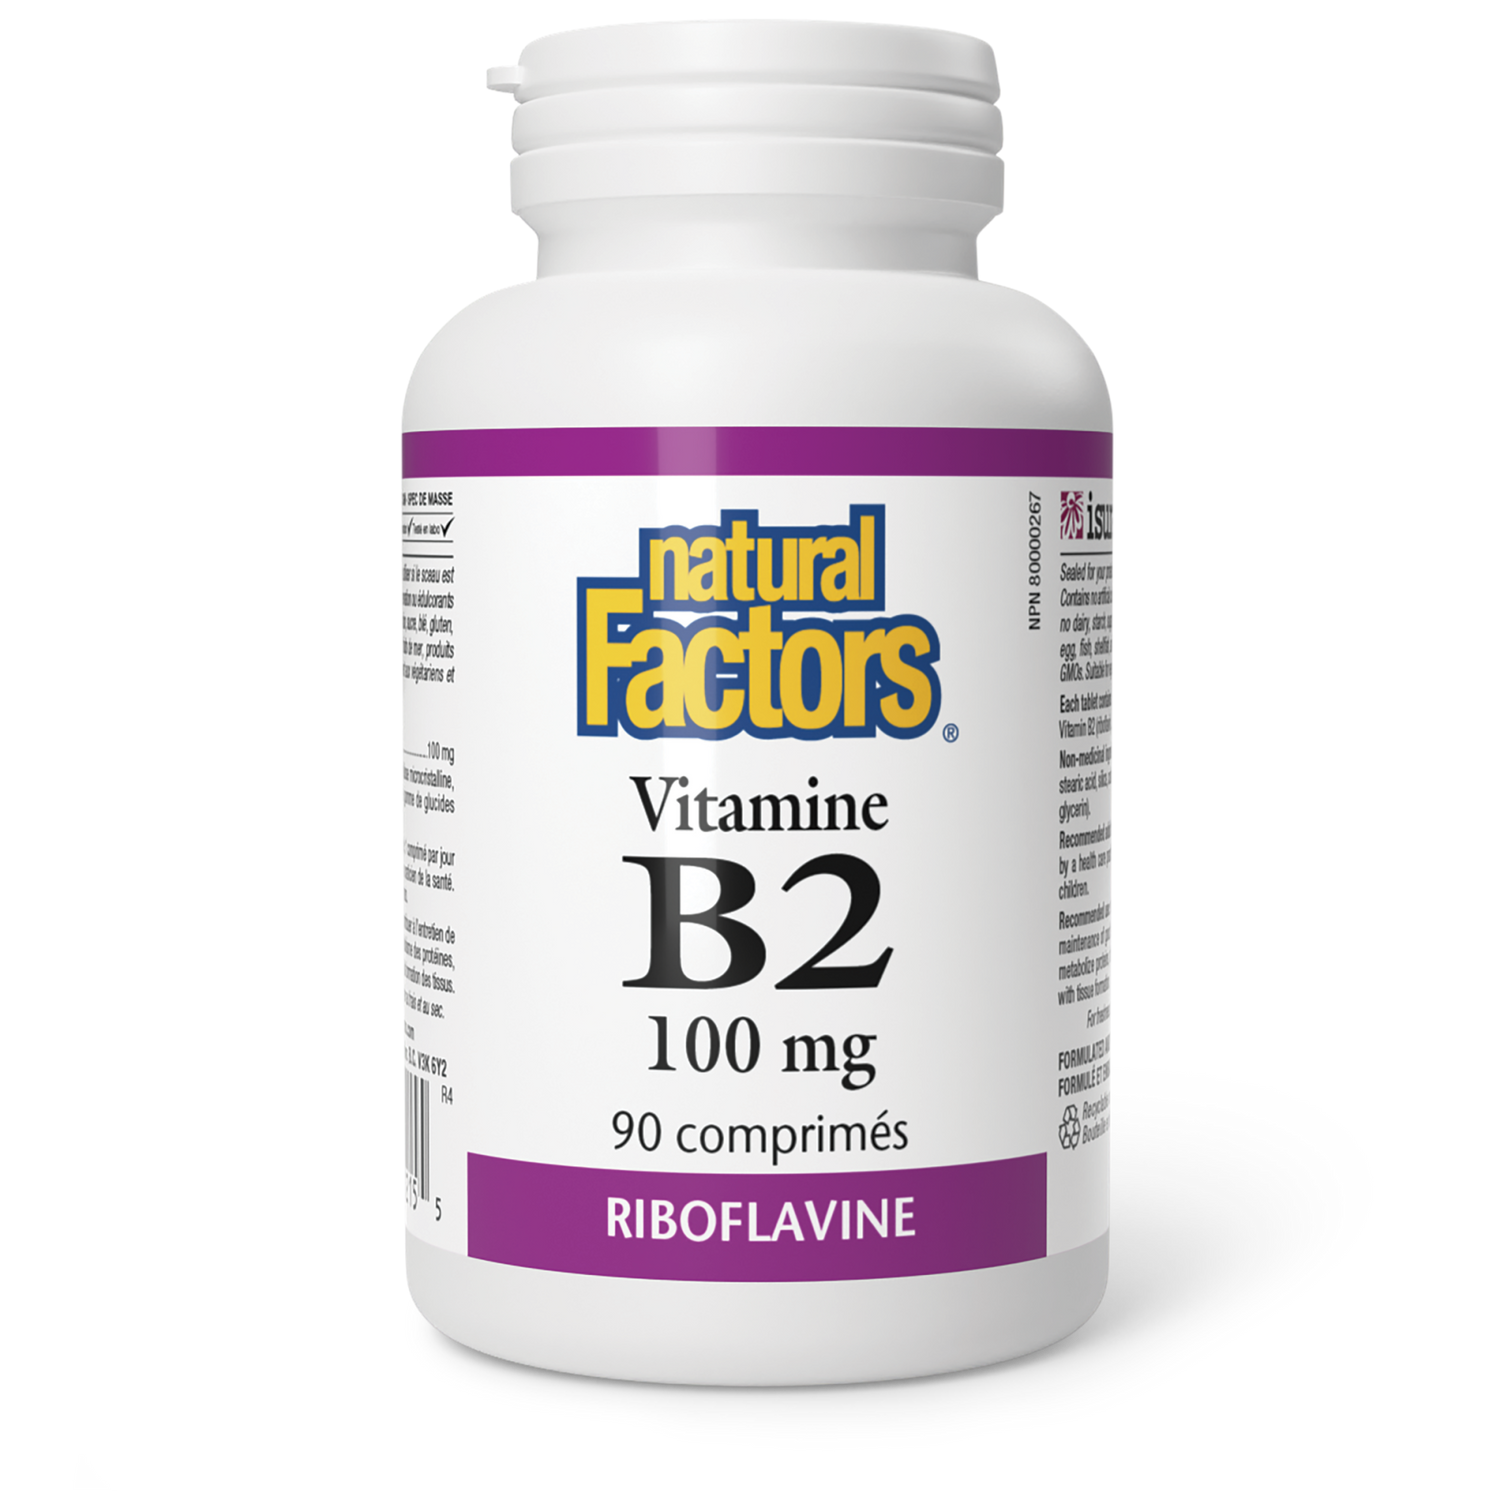 Vitamine B2 100 mg, Natural Factors|v|image|1215